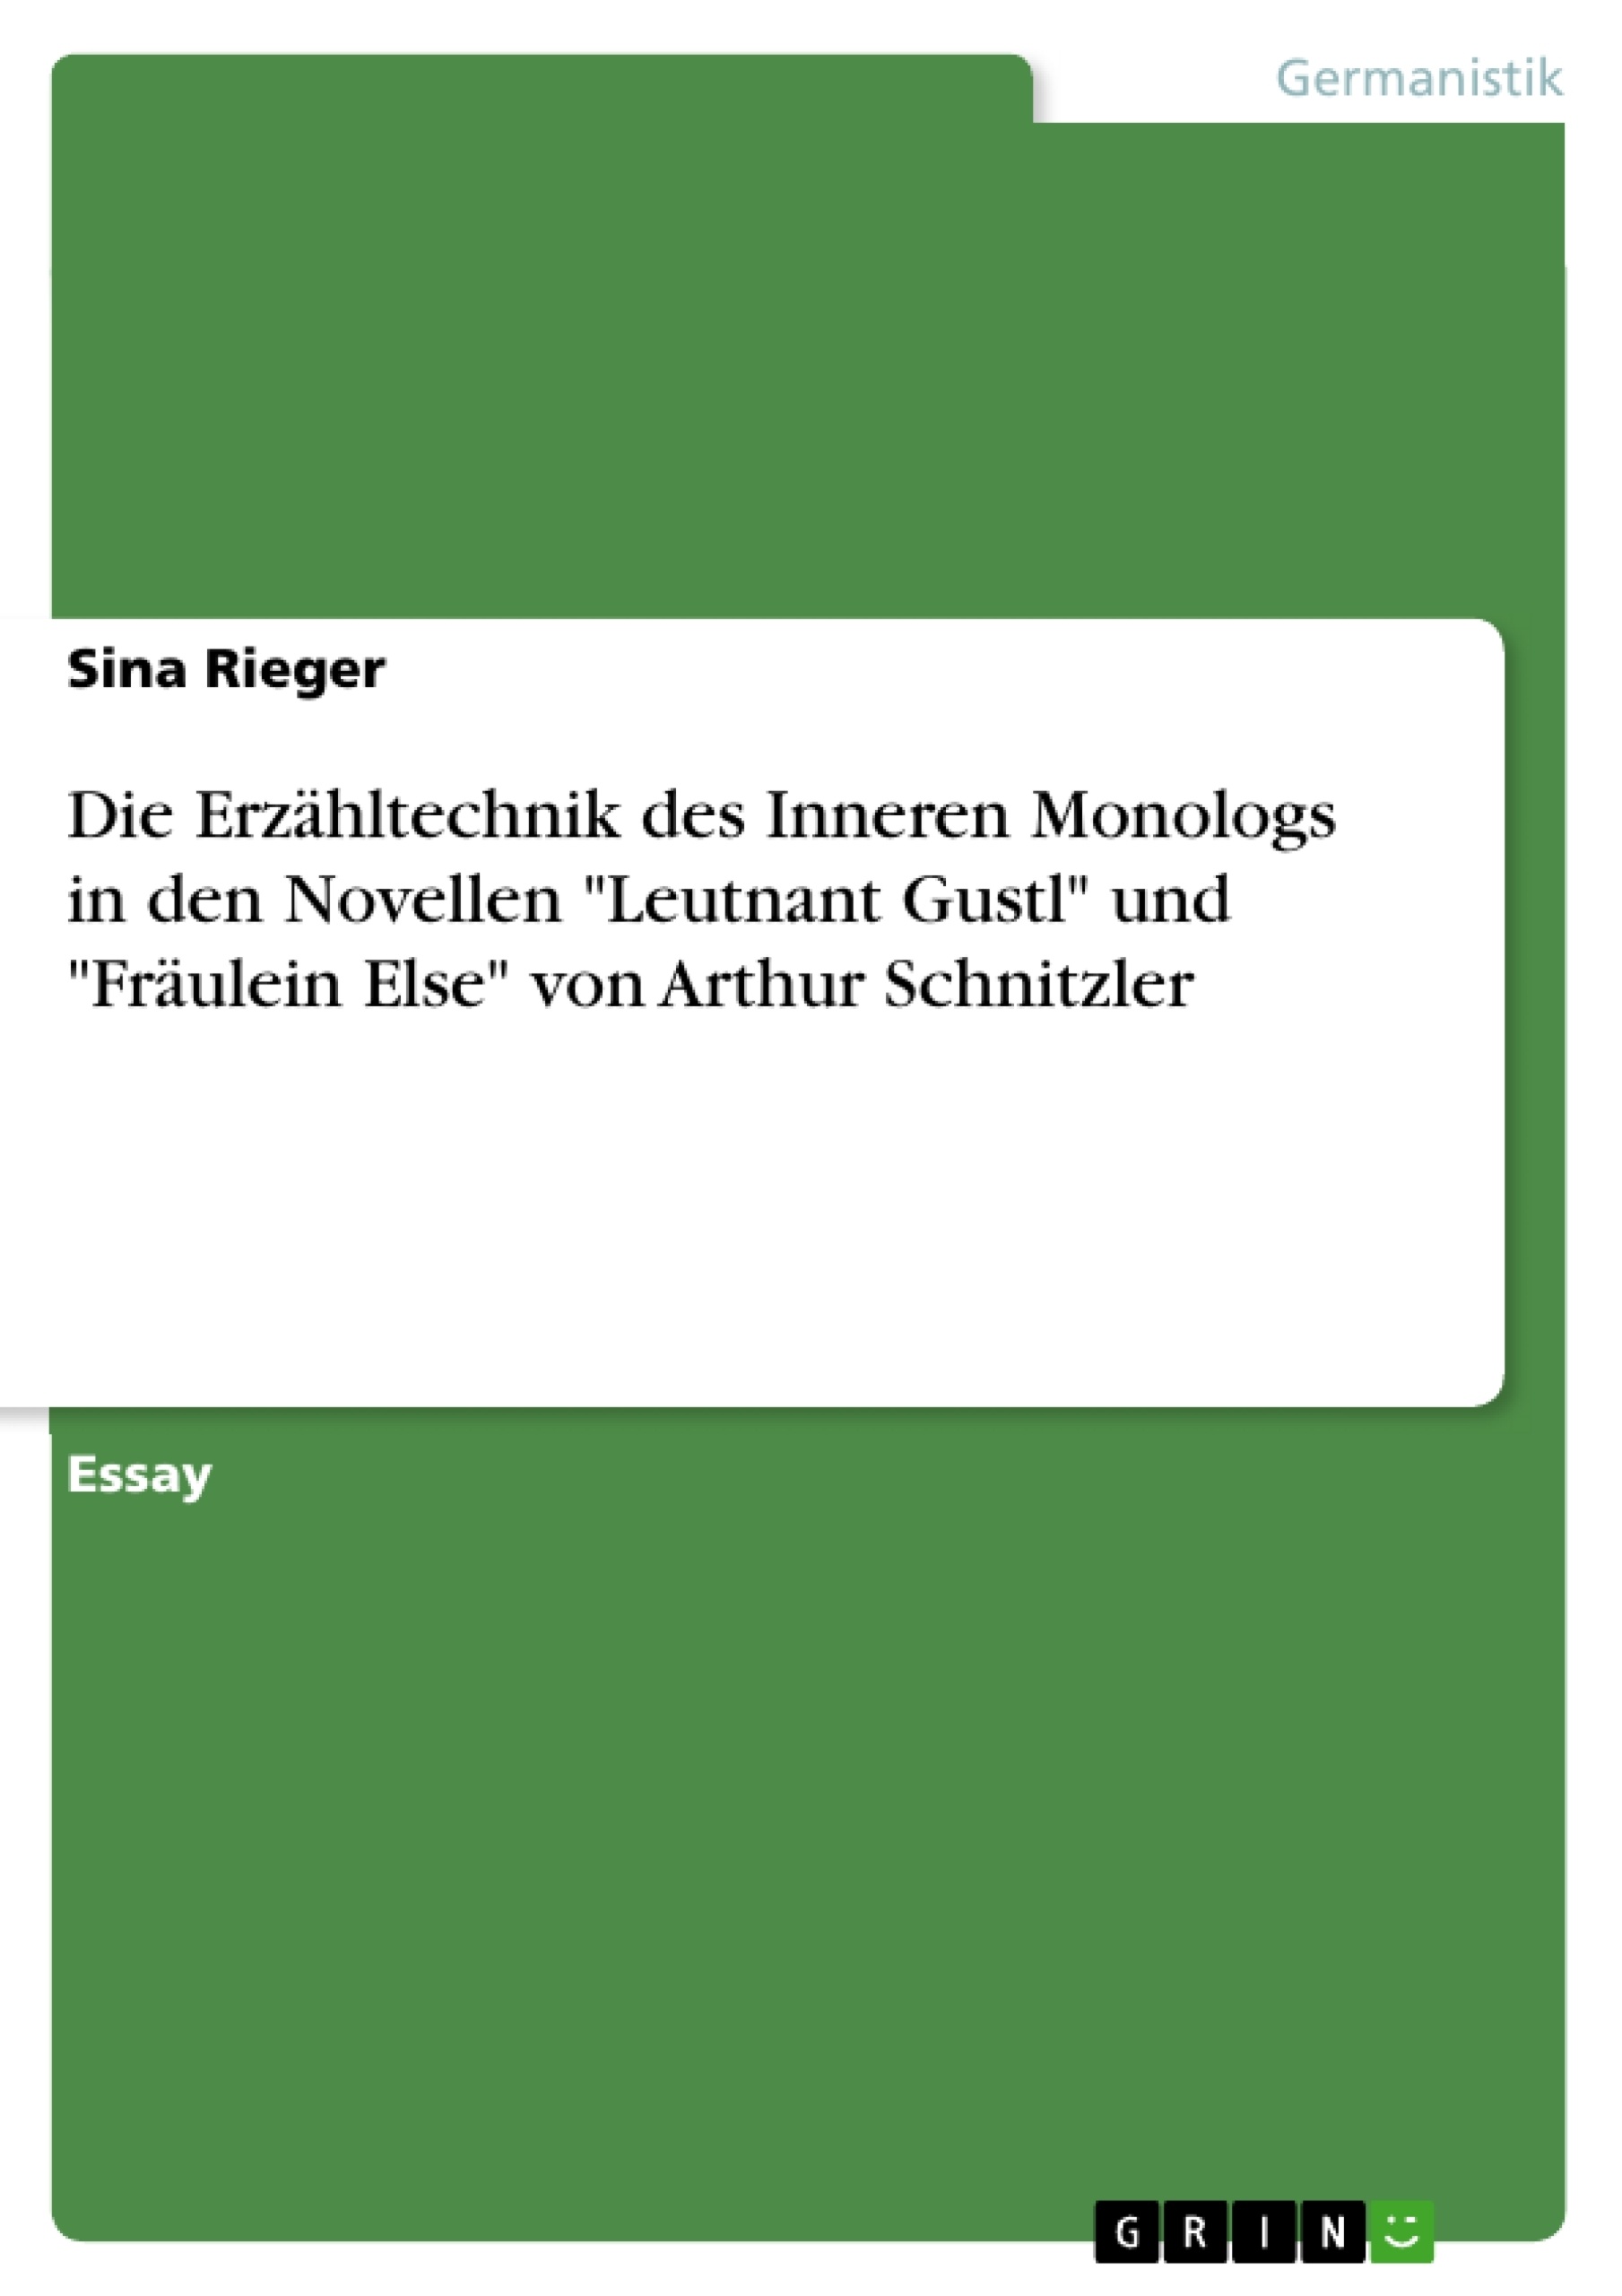 Title: Die Erzähltechnik des Inneren Monologs in den Novellen "Leutnant Gustl" und "Fräulein Else" von Arthur Schnitzler